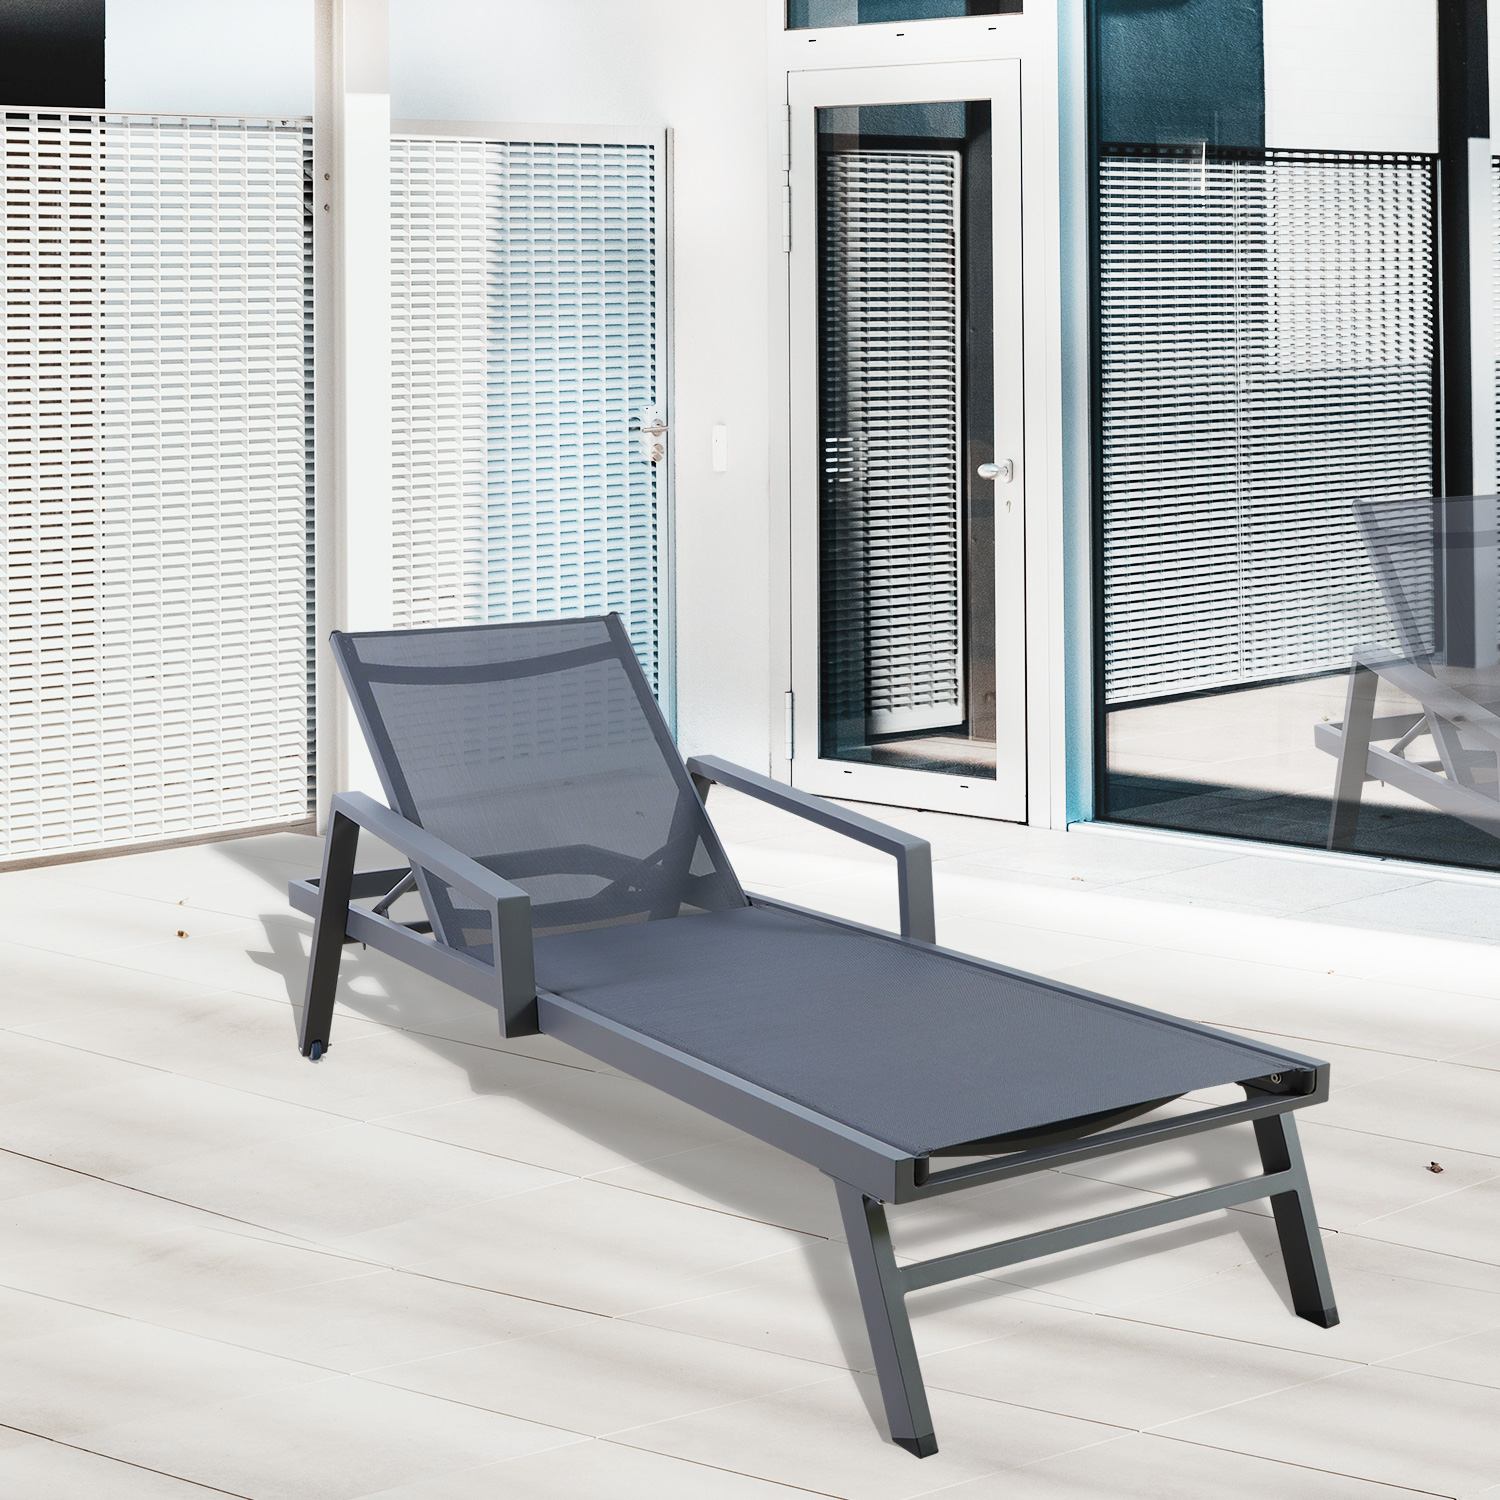 Chaise longue da esterno regolabile in alluminio